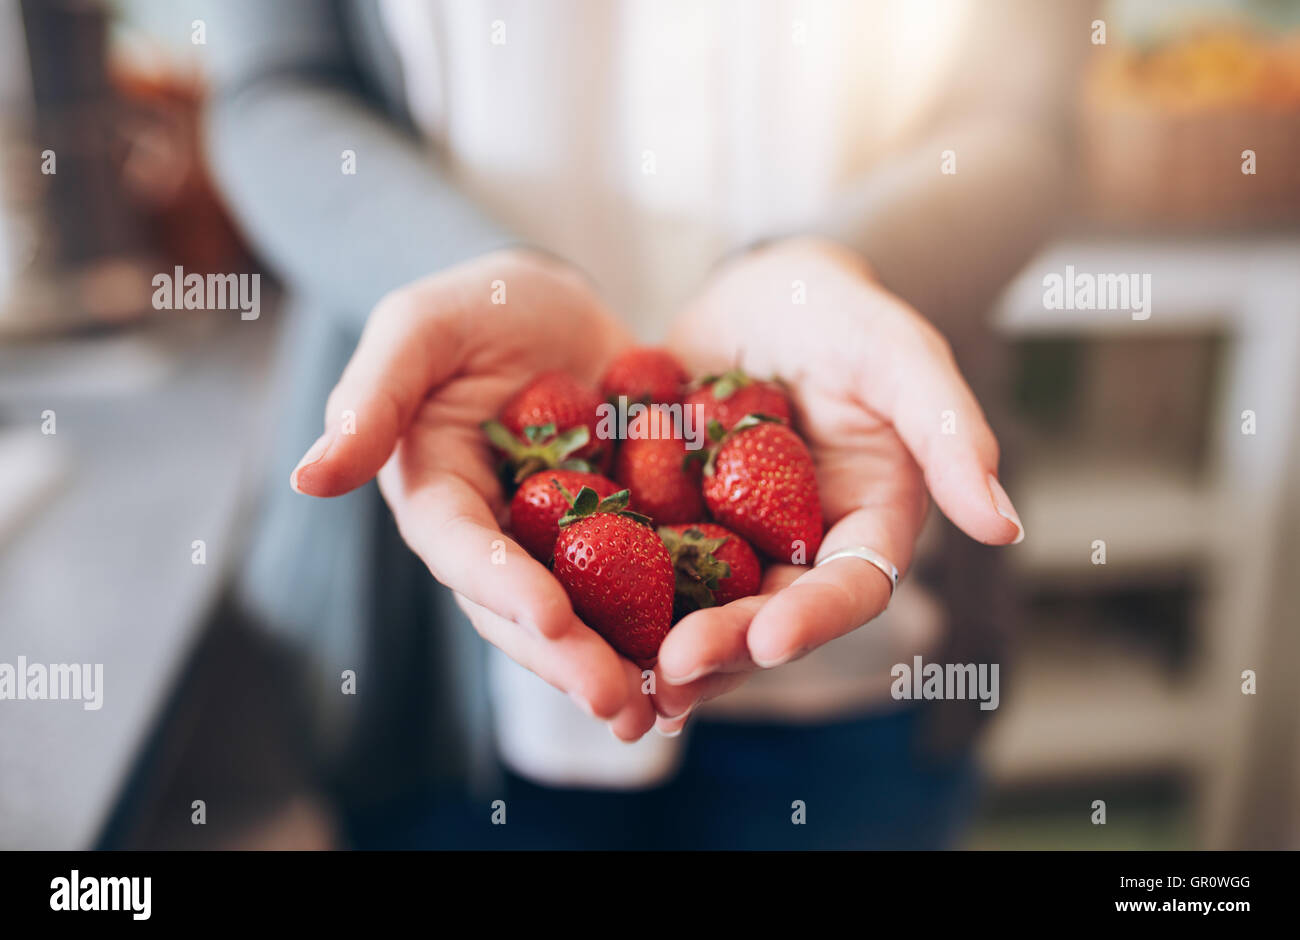 Imagen recortada a una mujer manos sosteniendo un montón de fresas. Mujer sosteniendo un puñado de fresas frescas. Foto de stock